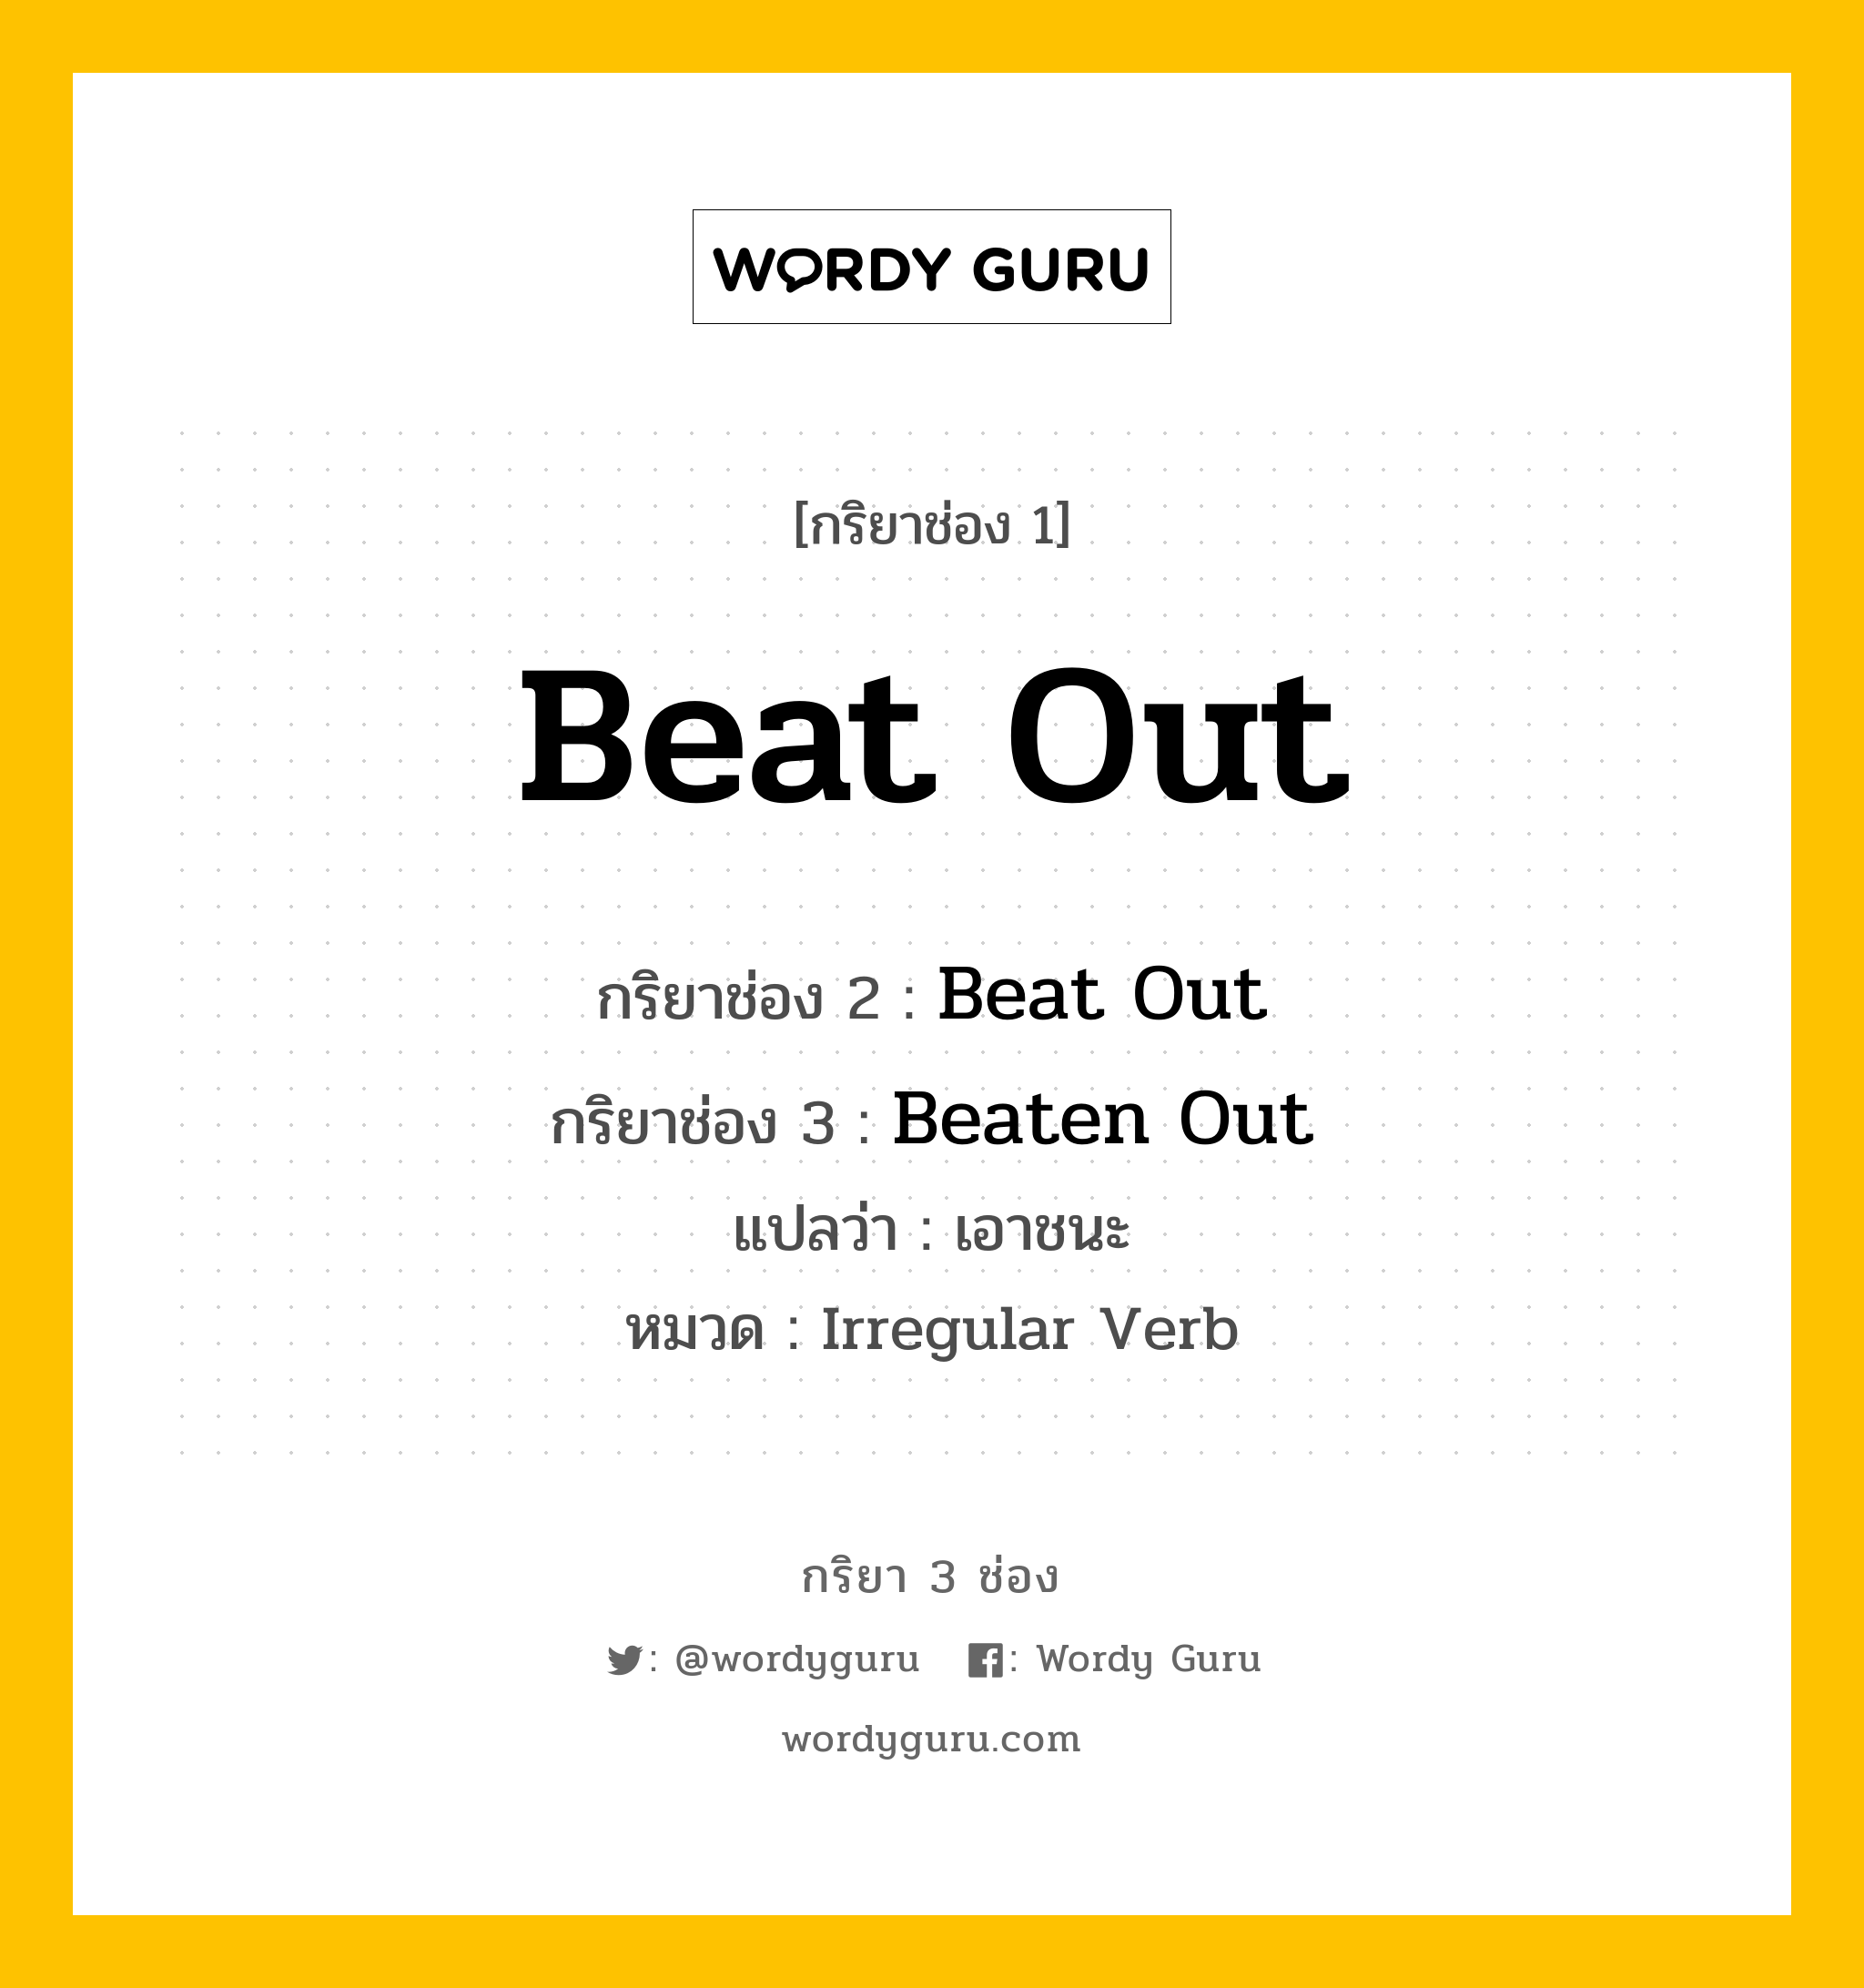 Beat Out มีกริยา 3 ช่องอะไรบ้าง? คำศัพท์ในกลุ่มประเภท Irregular Verb, กริยาช่อง 1 Beat Out กริยาช่อง 2 Beat Out กริยาช่อง 3 Beaten Out แปลว่า เอาชนะ หมวด Irregular Verb หมวด Irregular Verb